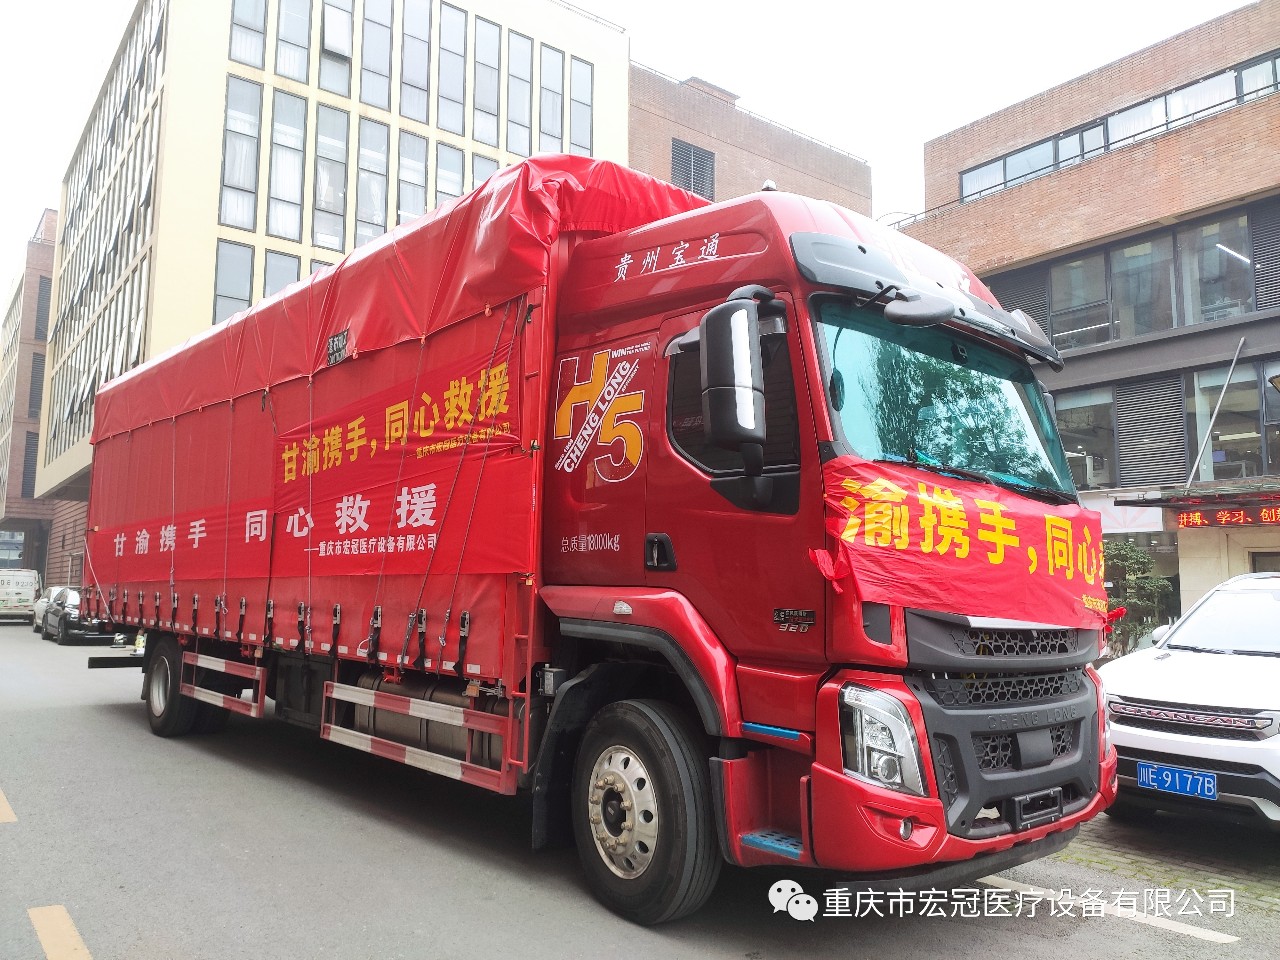 Chongqing Hongguan Medical Equipment Co., Ltd. ахвяравала больш за 700 000 юаняў медыцынскіх сродкаў для падтрымкі раёнаў бедства ў Ганьсу.